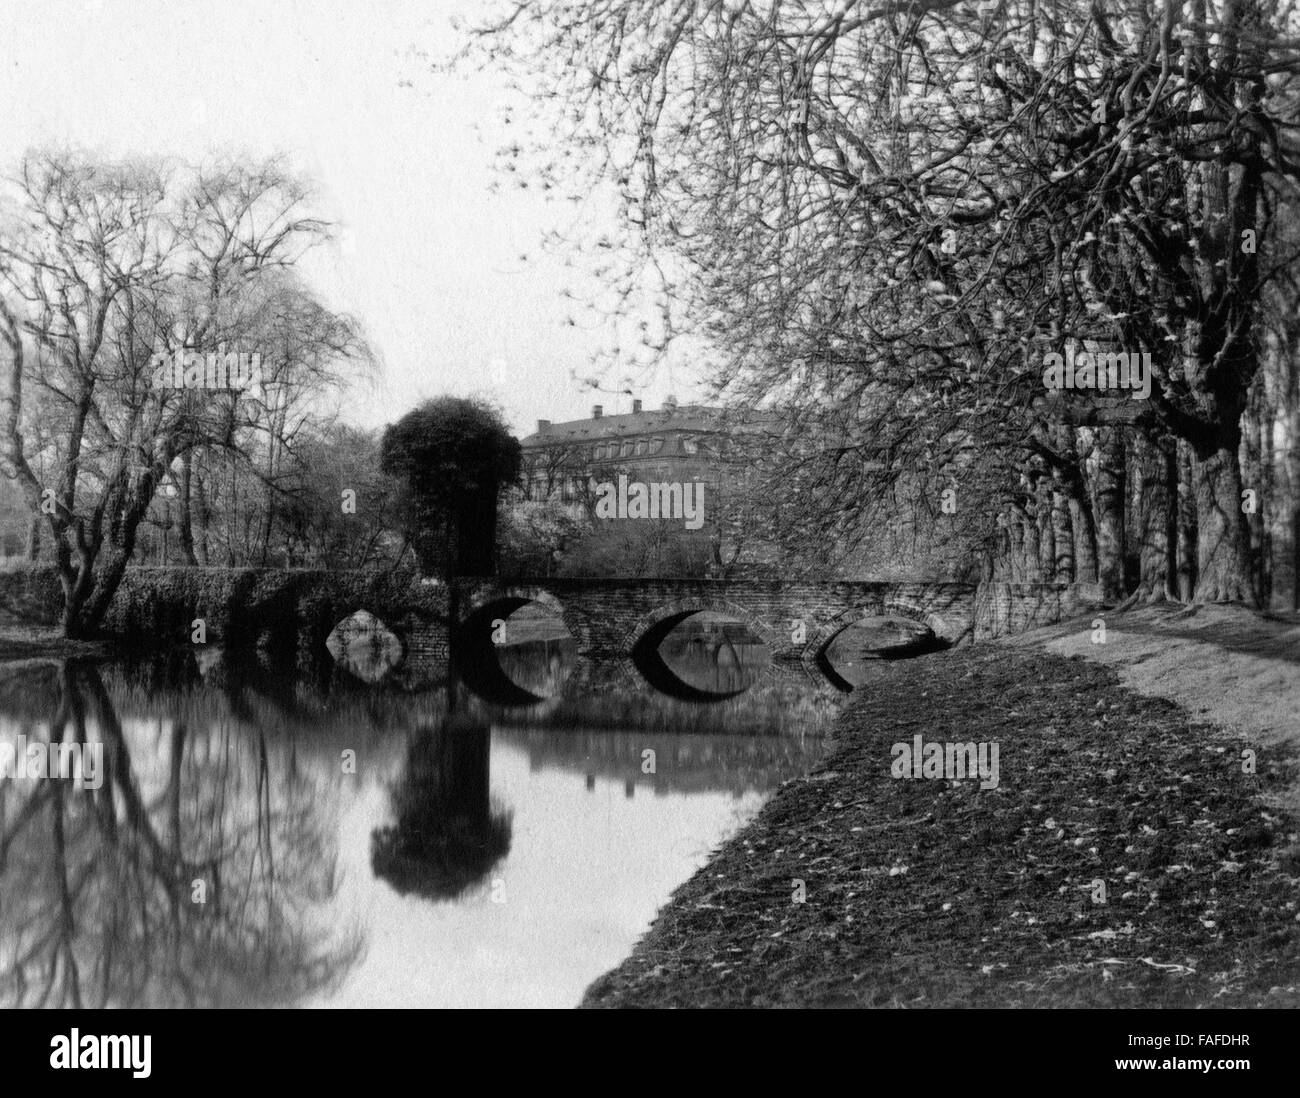 Brücke über einen Fluß beim Schloss à Brühl, Deutschland 1920er Jahre. Pont sur une rivière près du château de Bruehl, Allemagne 1920. Banque D'Images